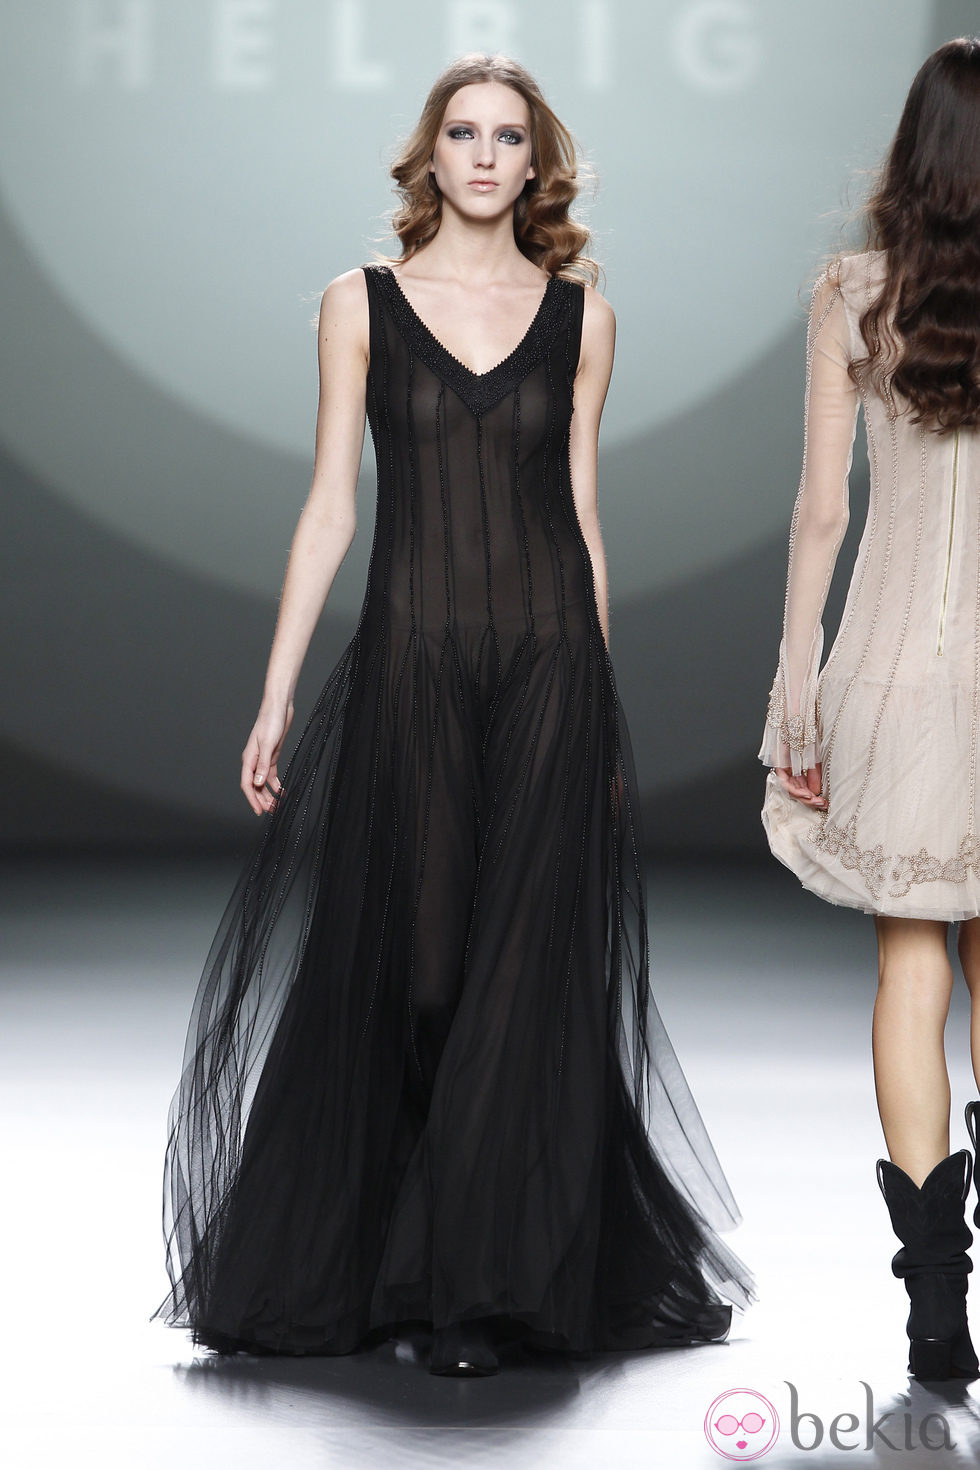 Vestido largo negro con transparencias de Teresa Helbig en Fashion Week Madrid